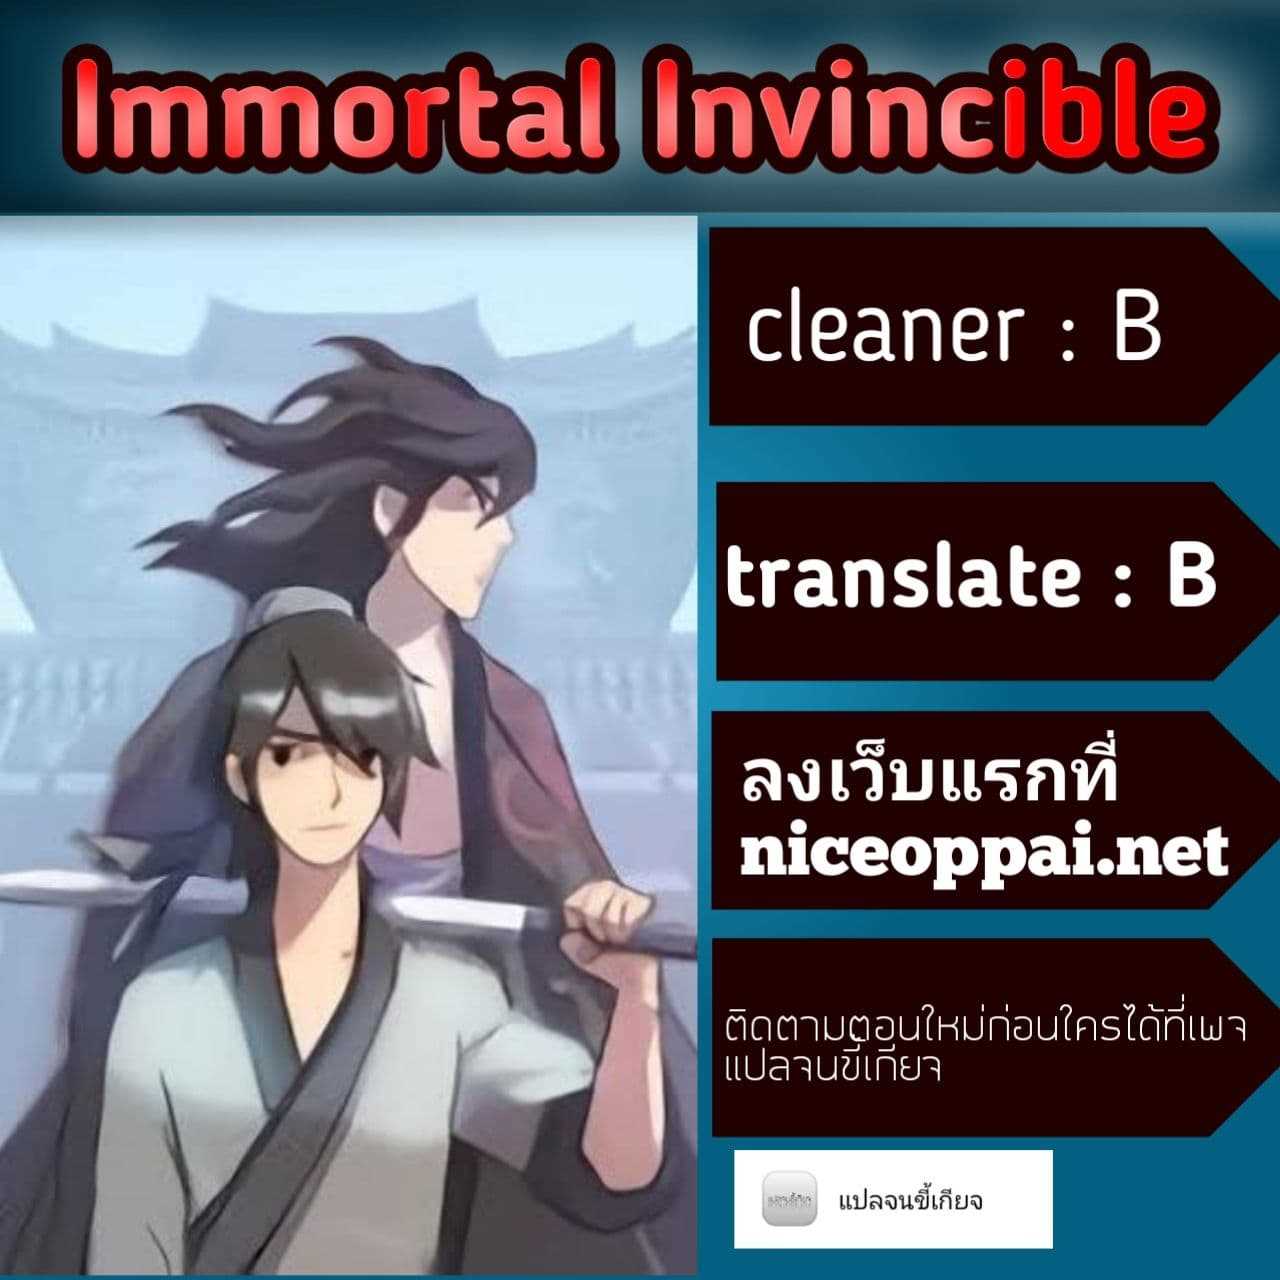 Immortal, Invincible 1 (15)